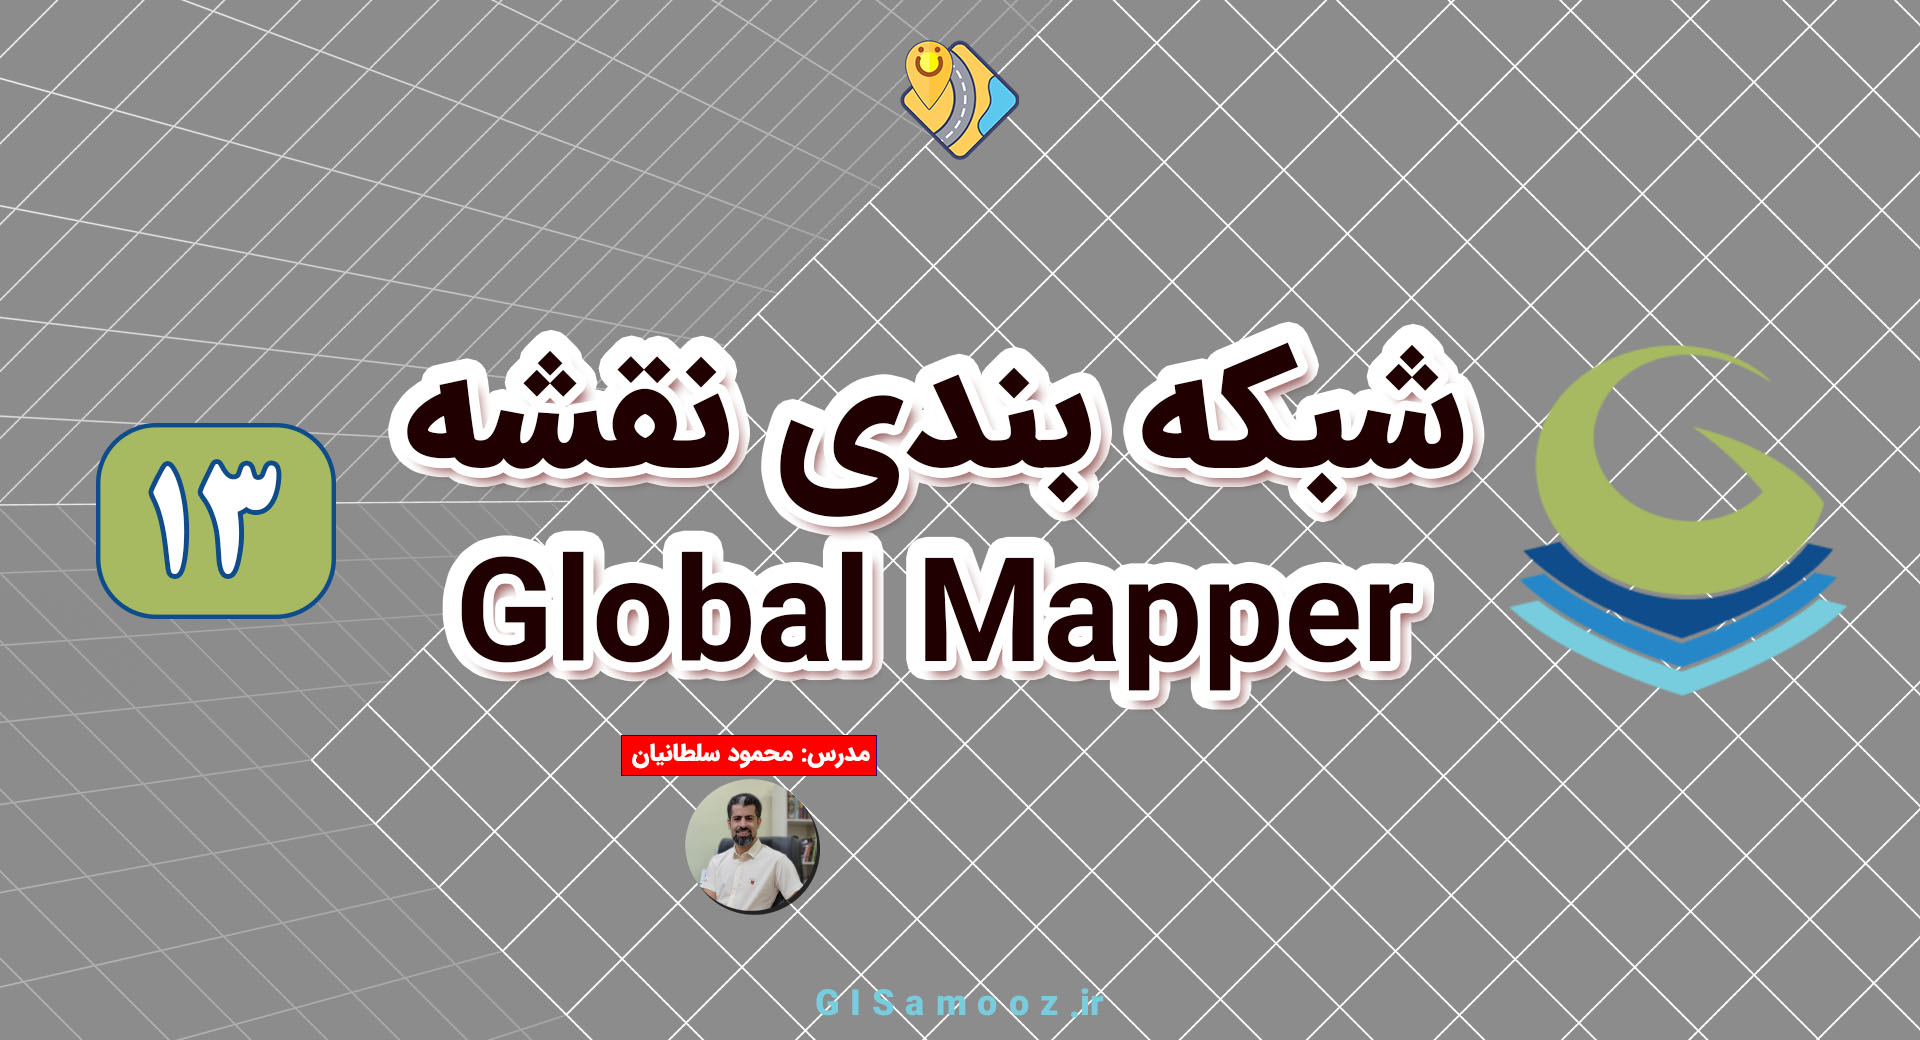 آموزش شبکه بندی در گلوبال مپر Global Mapper